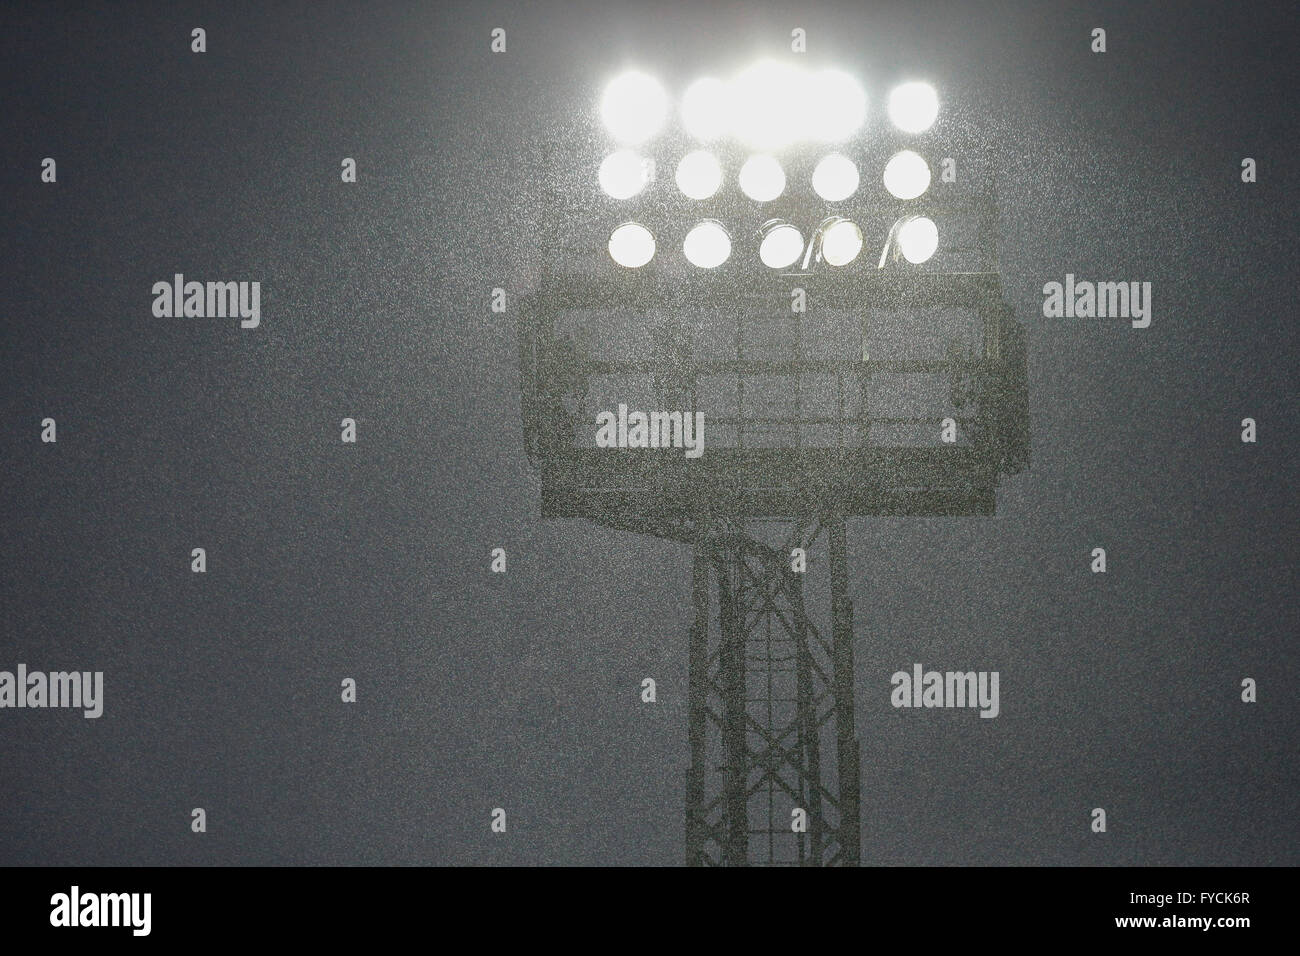 Scheinwerfer leuchten durch den Regen, Hohe Warte-Stadion, Wien, Österreich  Stockfotografie - Alamy